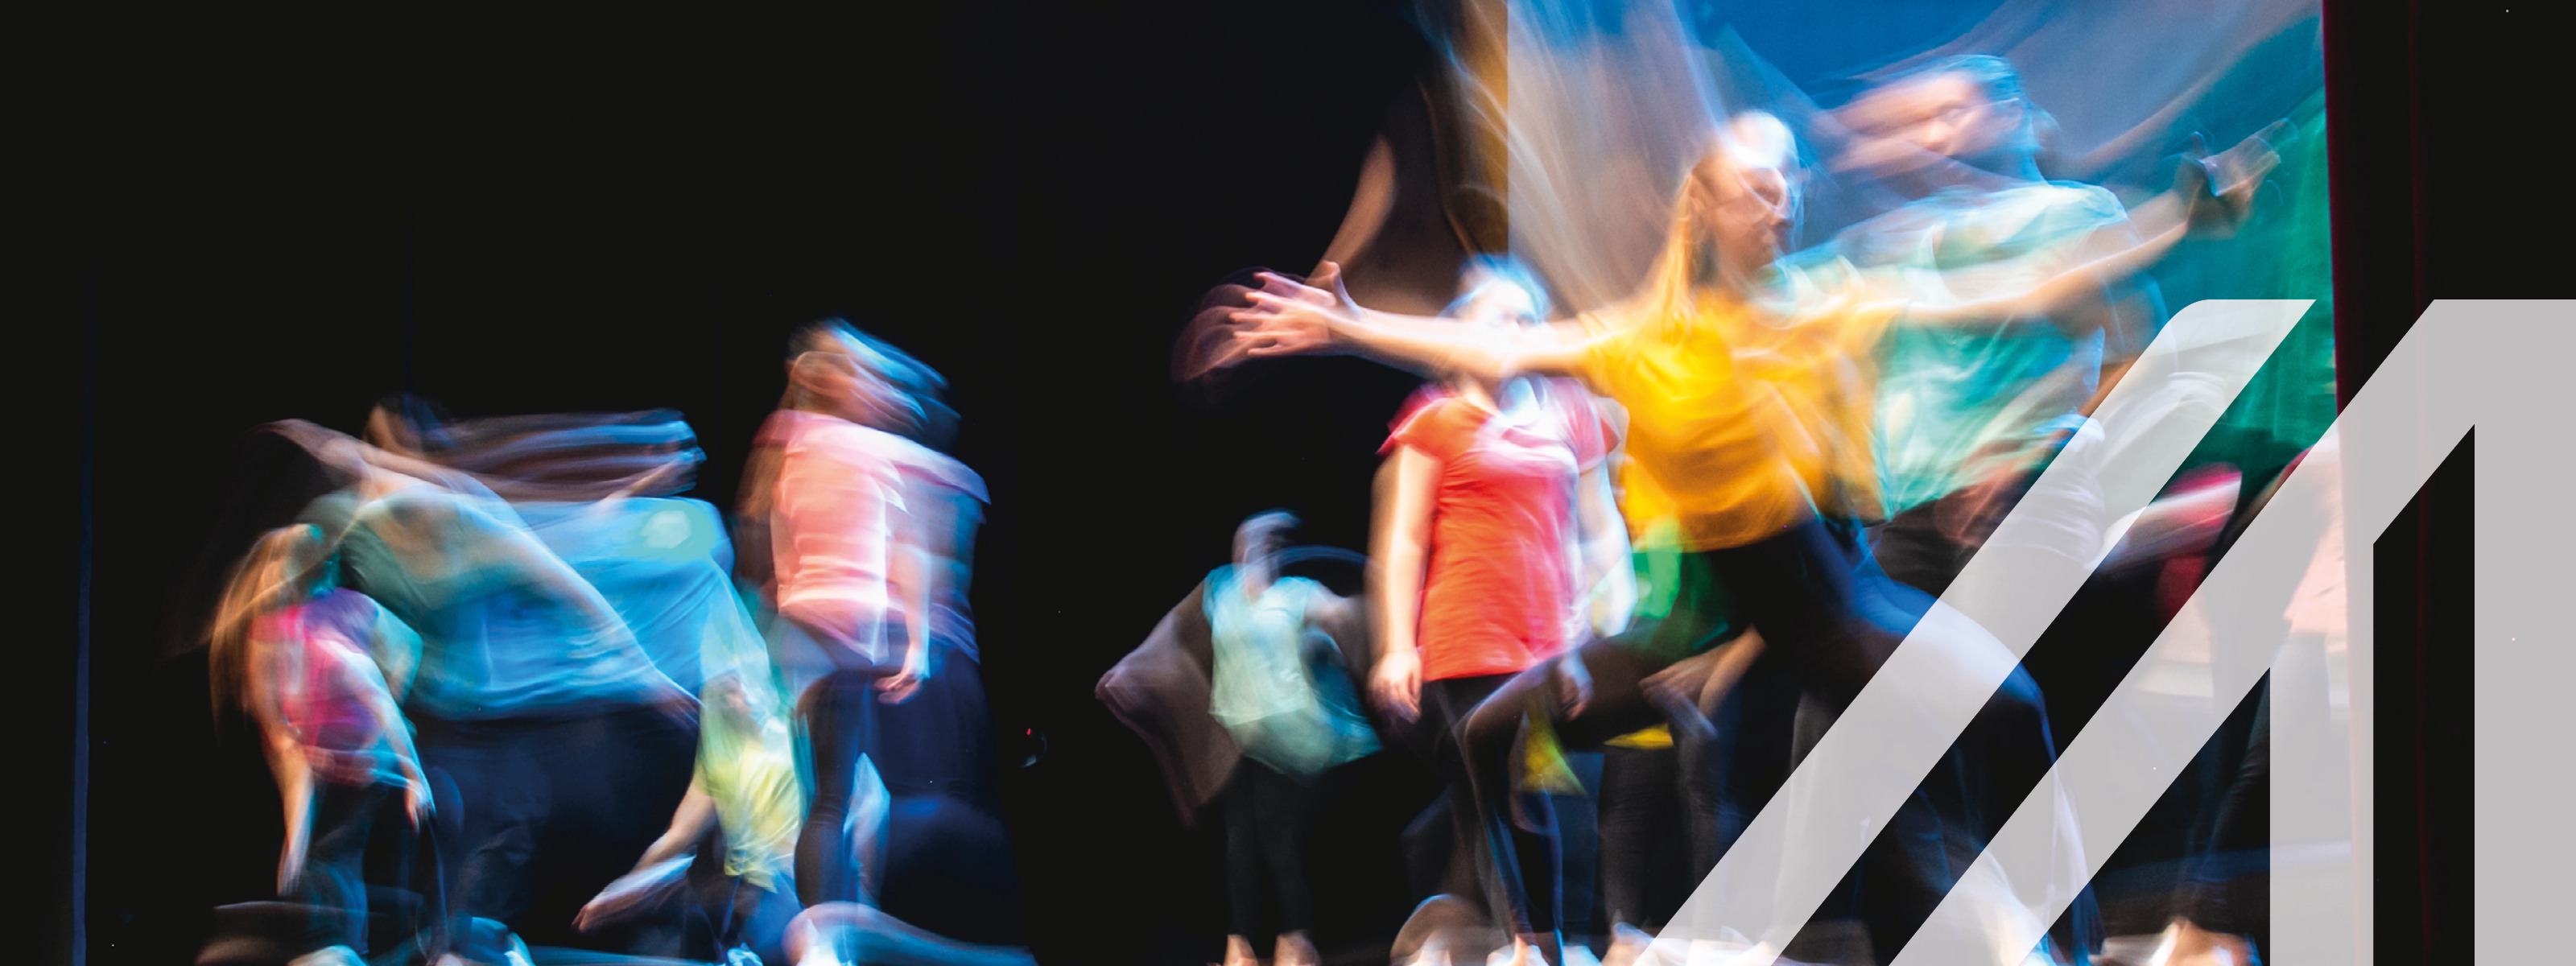 Gruppe von Tänzern in farbigen Kleidern tanzen auf der Bühne in Langzeitbelichtung